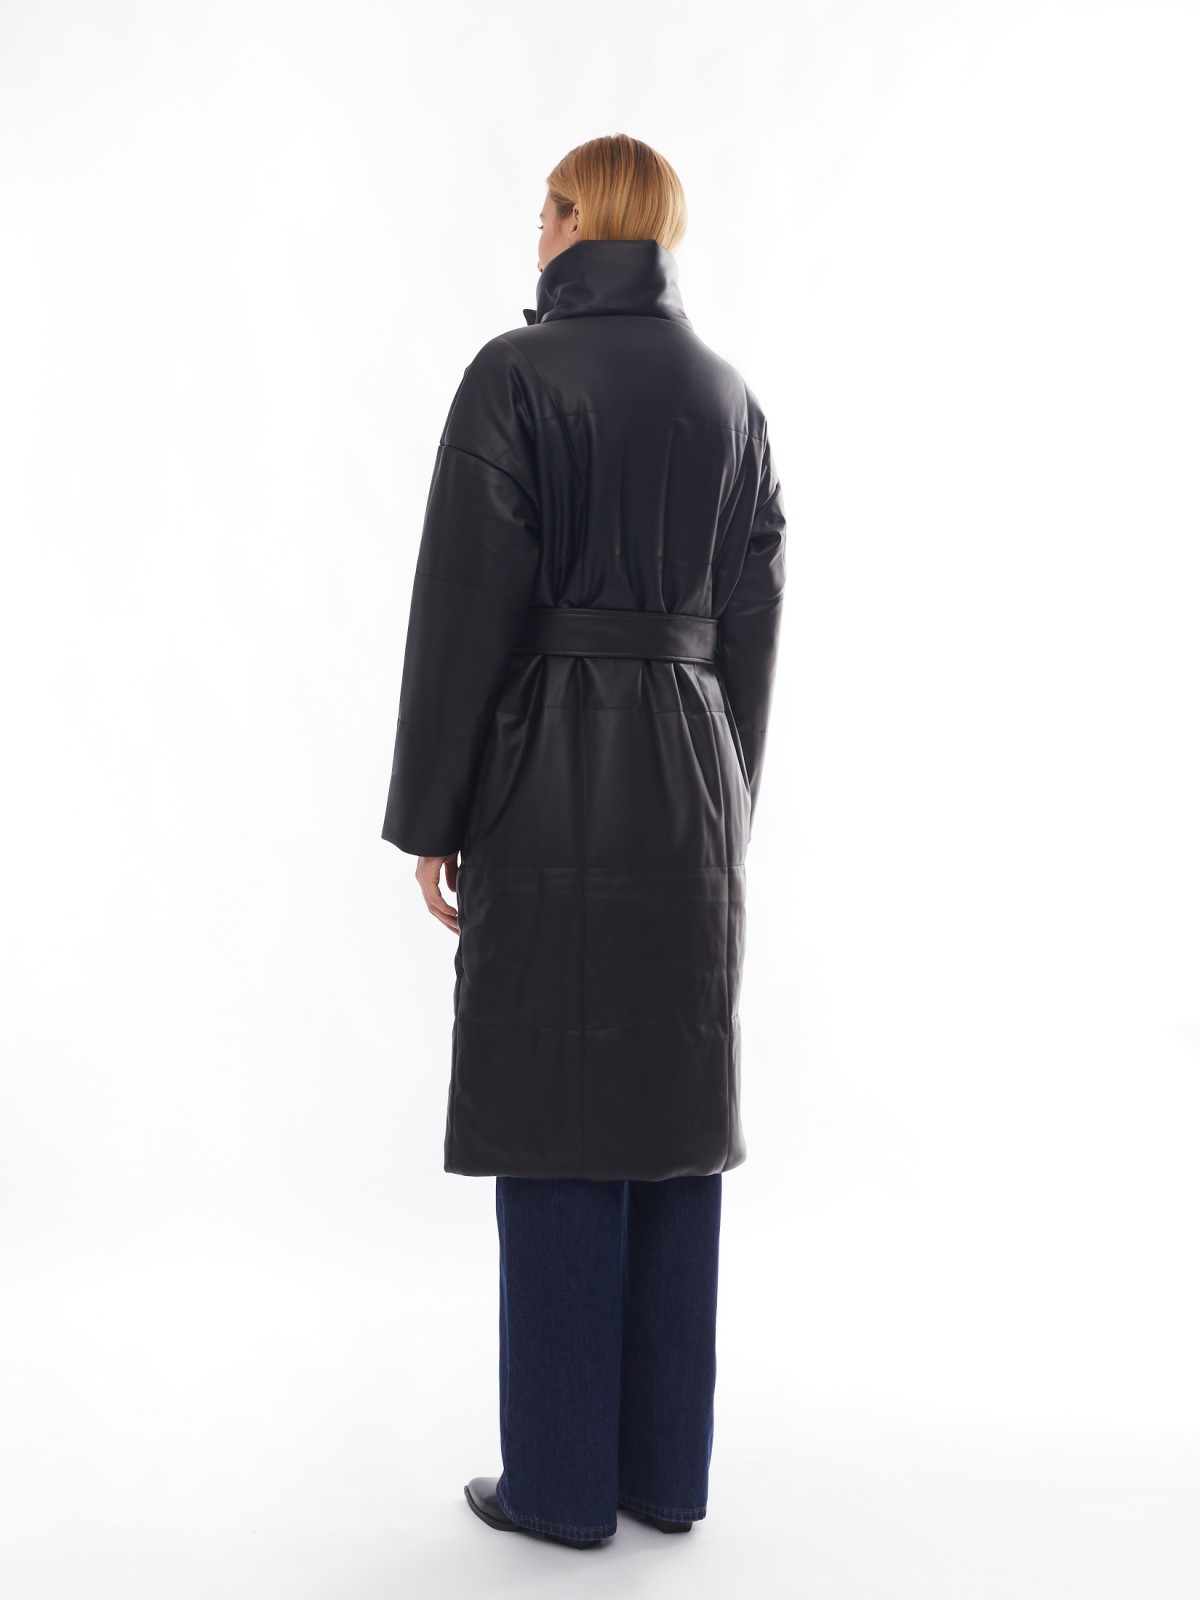 Тёплое пальто из экокожи на синтепоне с воротником-стойкой и поясом zolla 02412522N034, цвет черный, размер XS - фото 6